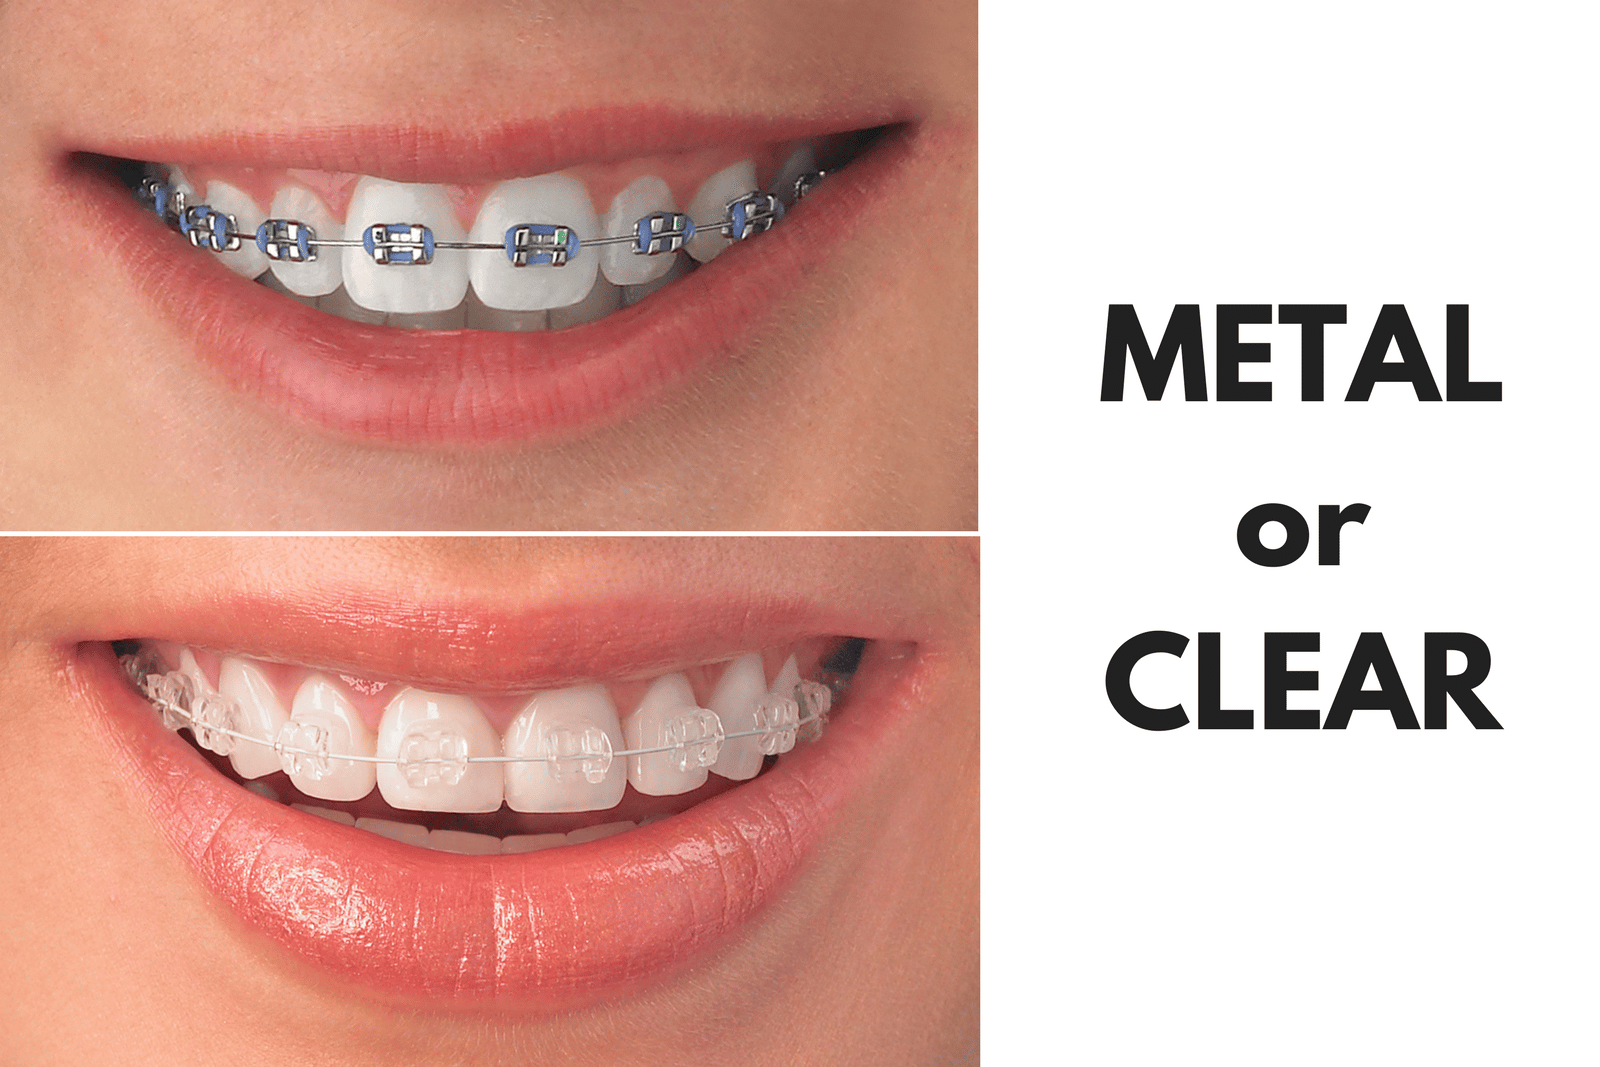 Ask Your Edinburg Dentist: Should I Get Metal or Clear Braces